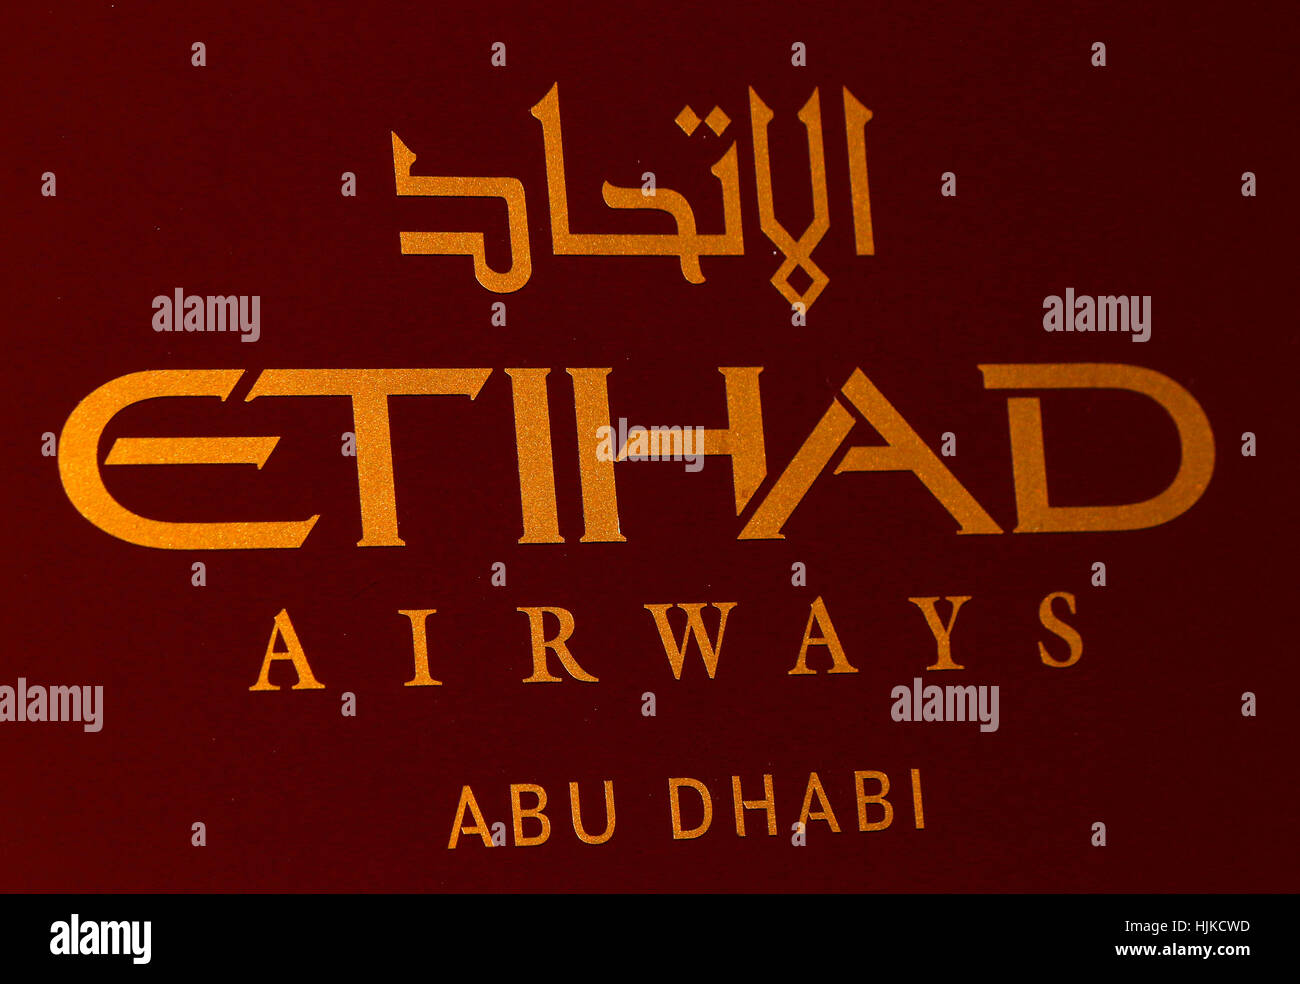 Das Logo der Marke "Ethiad Airways", Berlin. Stockfoto